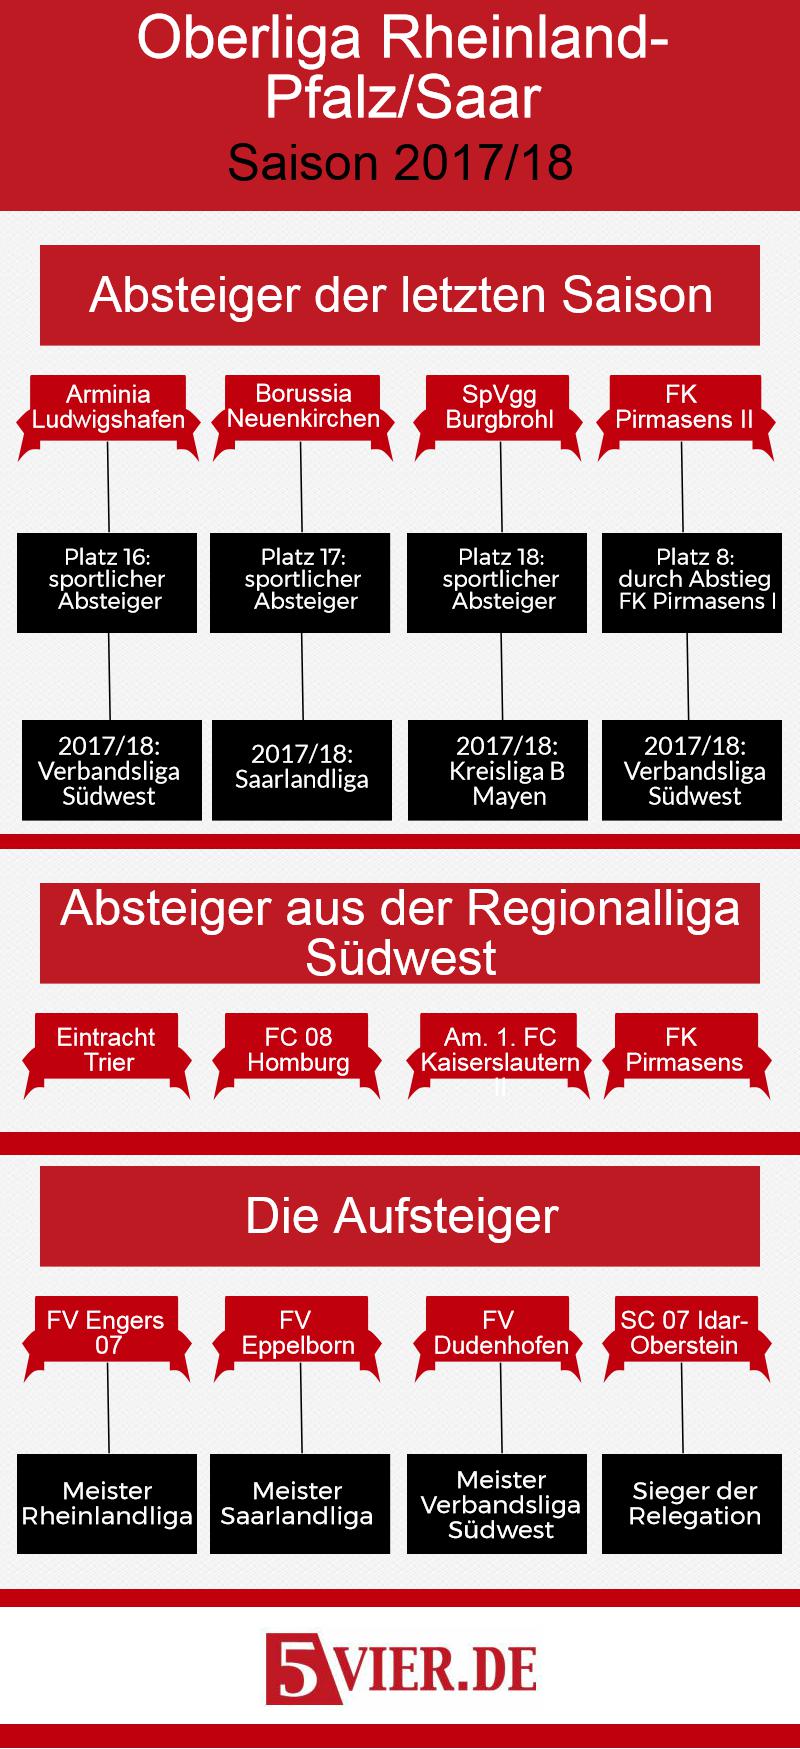 8 Mannschaften sind in der Saison 2017/18 in der Oberliga Rheinland-Pfalz/Saar neu dabei